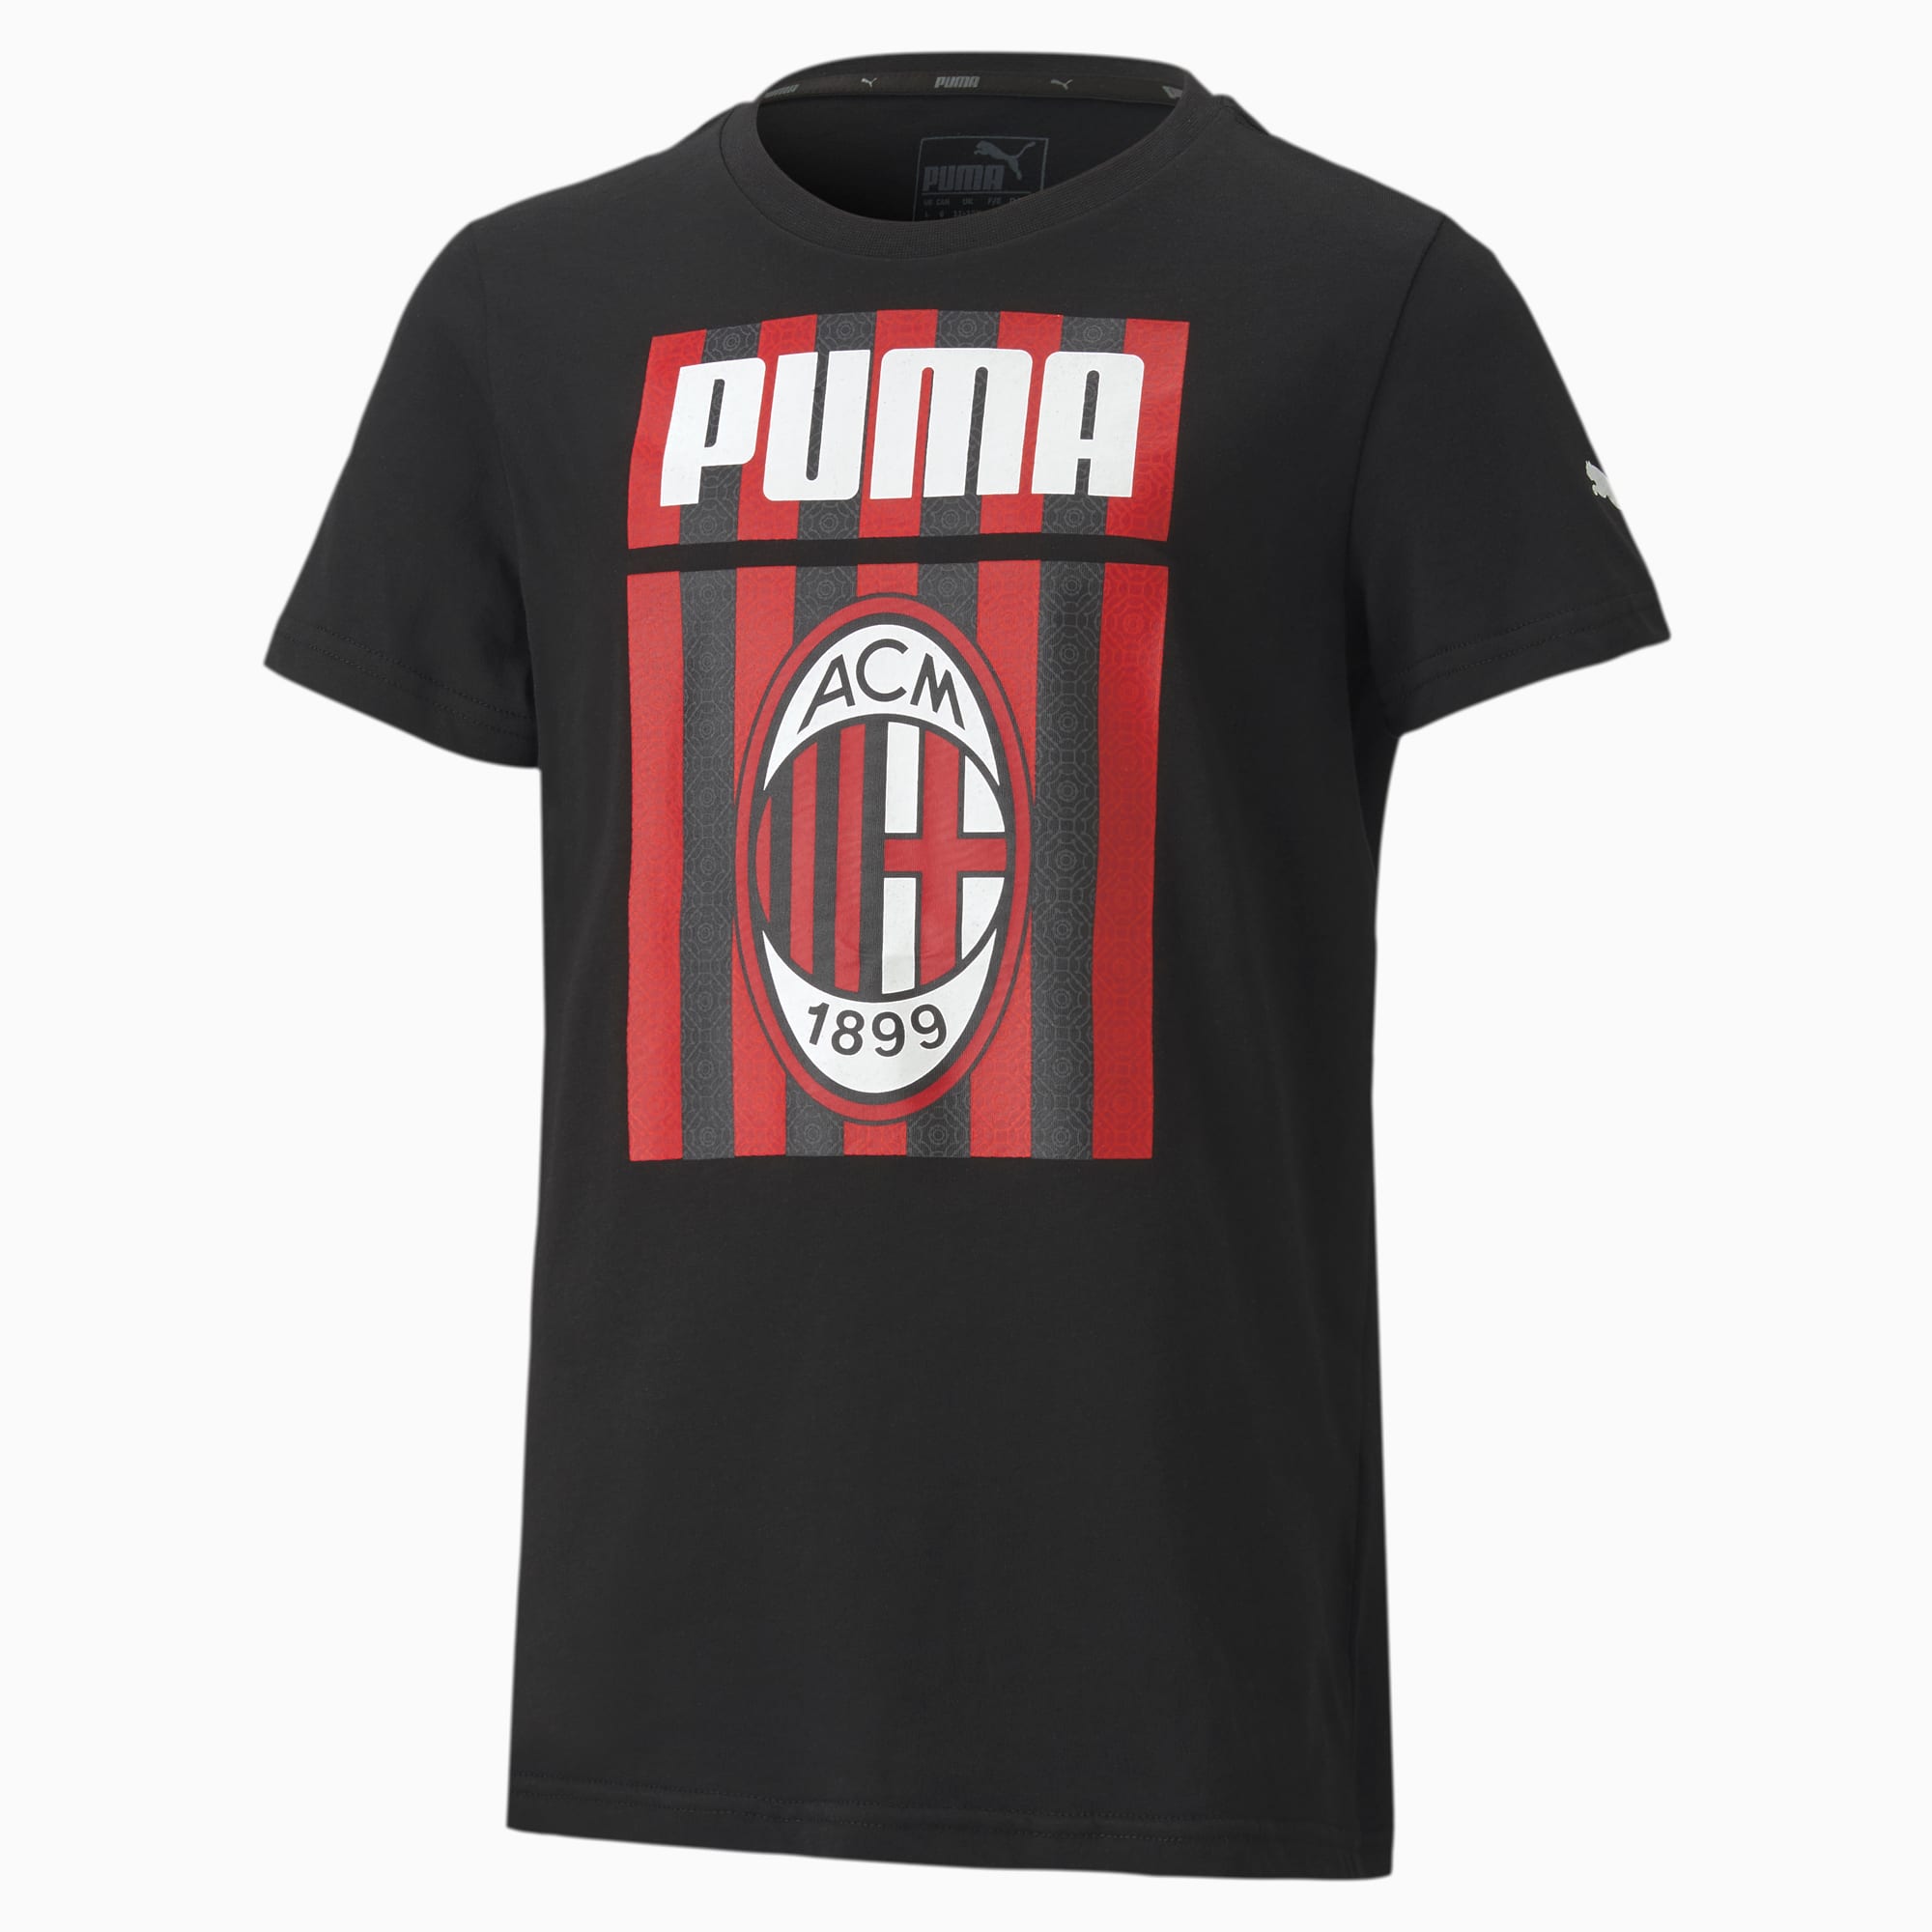 Image of PUMA AC Milan ftblCore Graphic Youth Fußball T-Shirt Für Kinder | Mit Aucun | Schwarz/Rot | Größe: 116